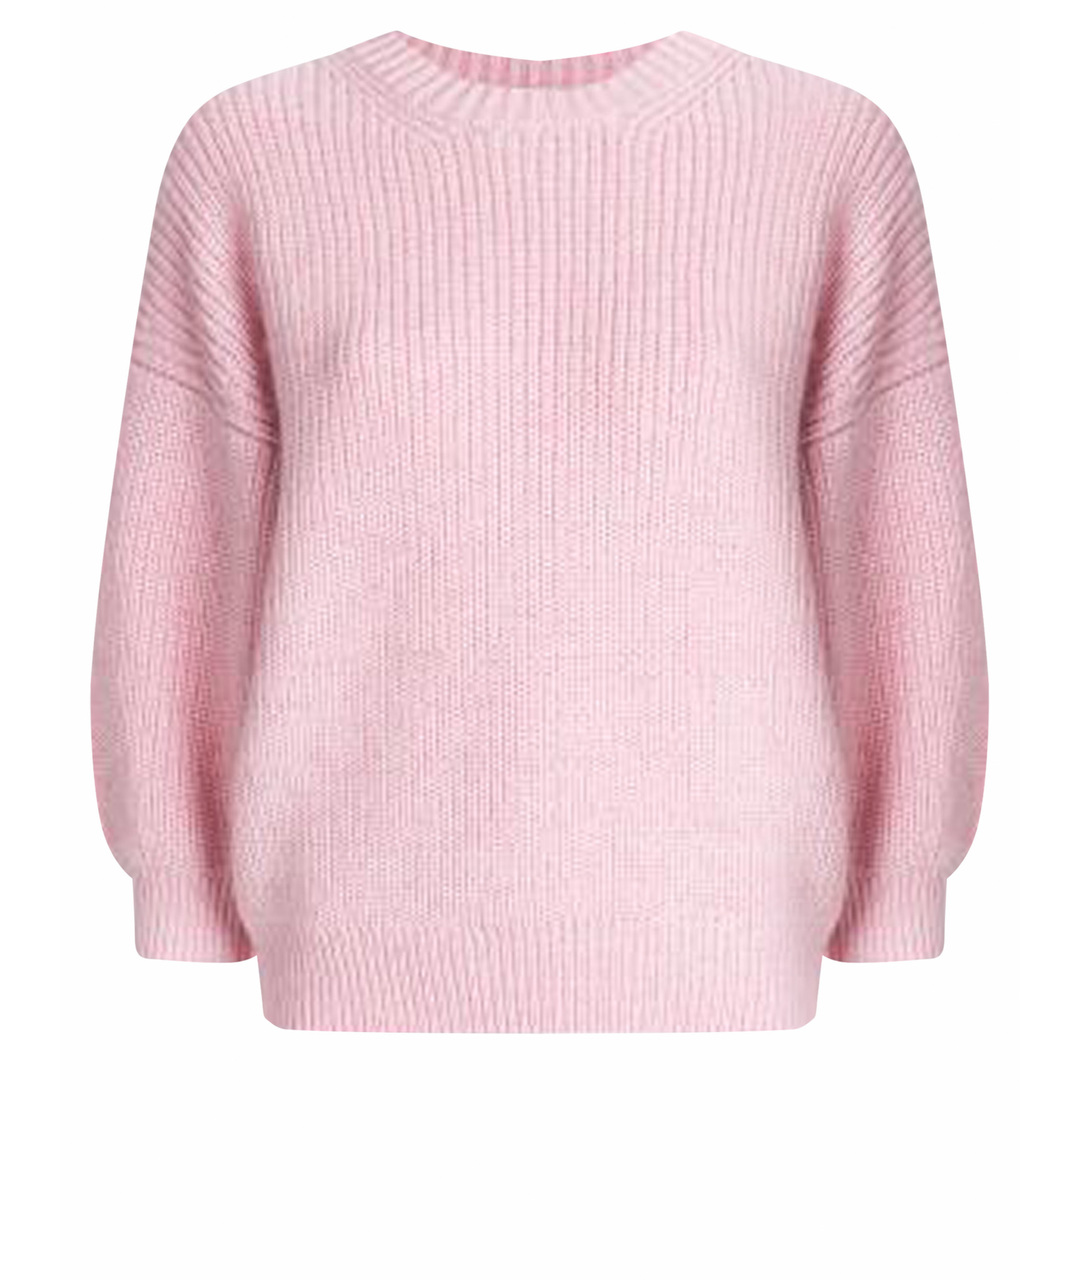 3.1 PHILLIP LIM Розовый шерстяной джемпер / свитер, фото 1